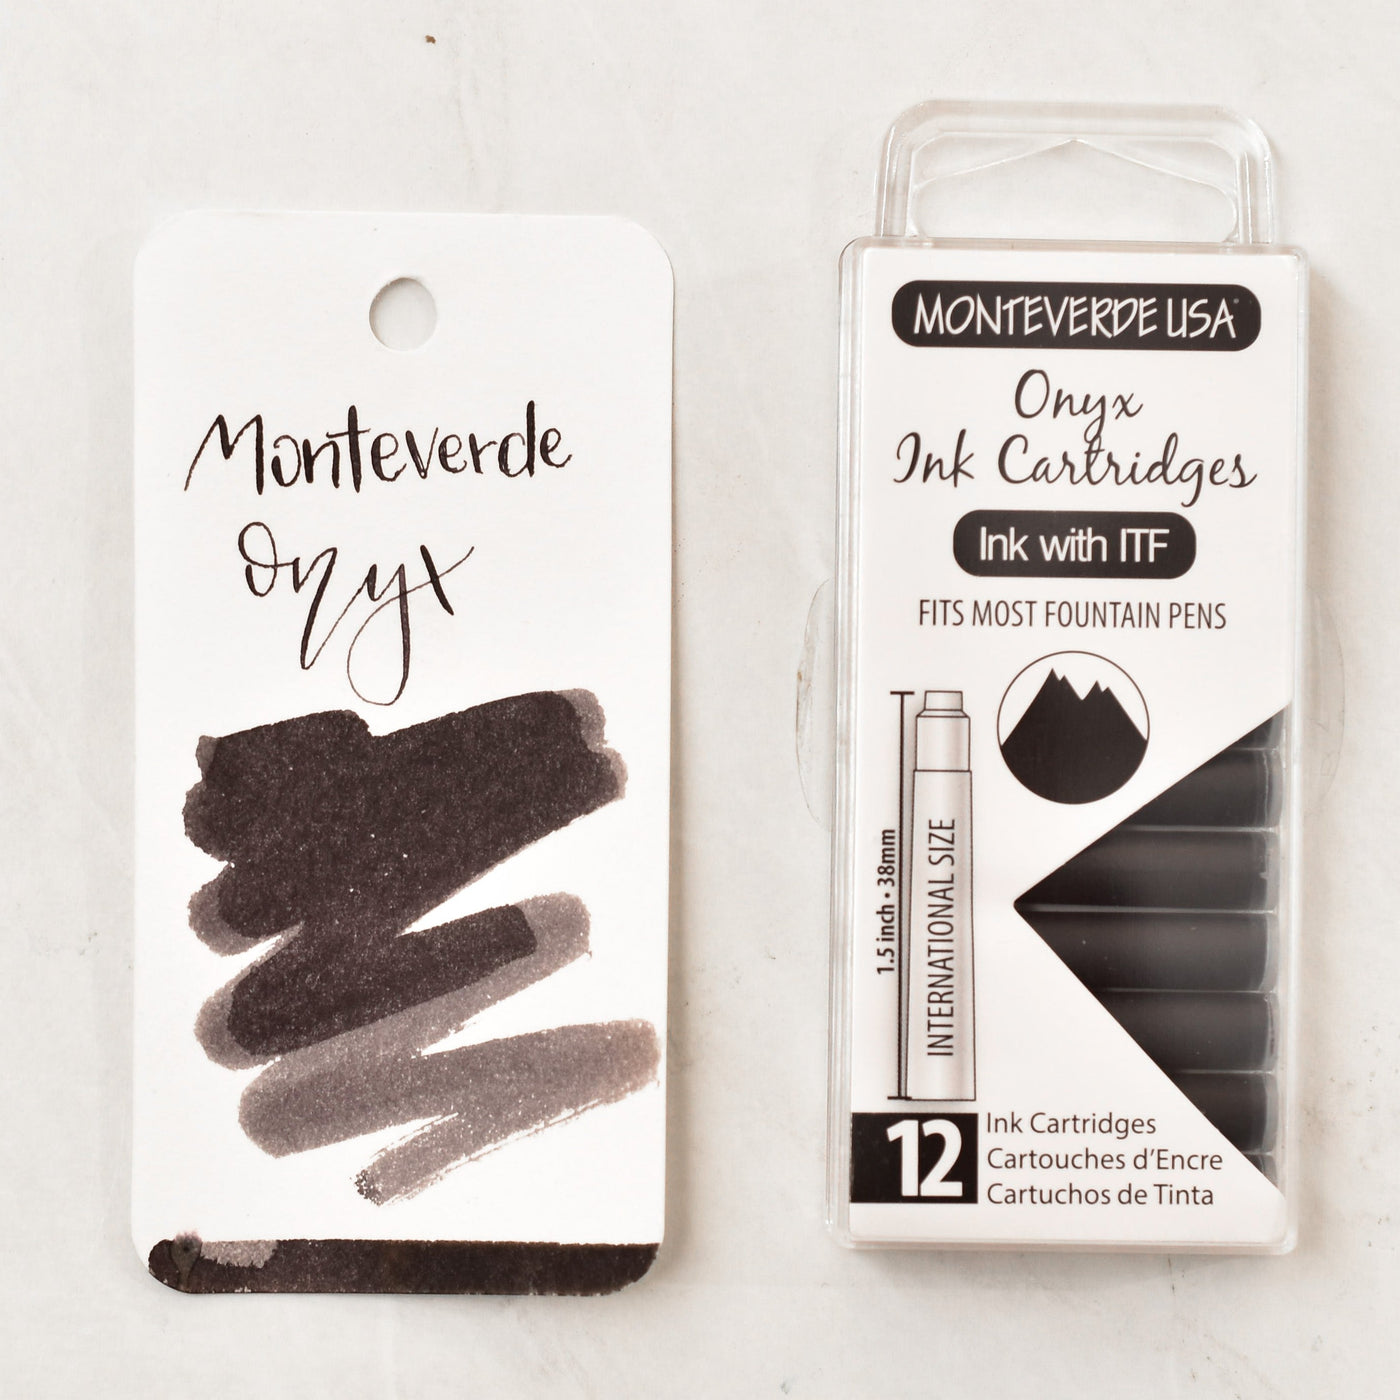 Monteverde Onyx Black Ink Cartridges